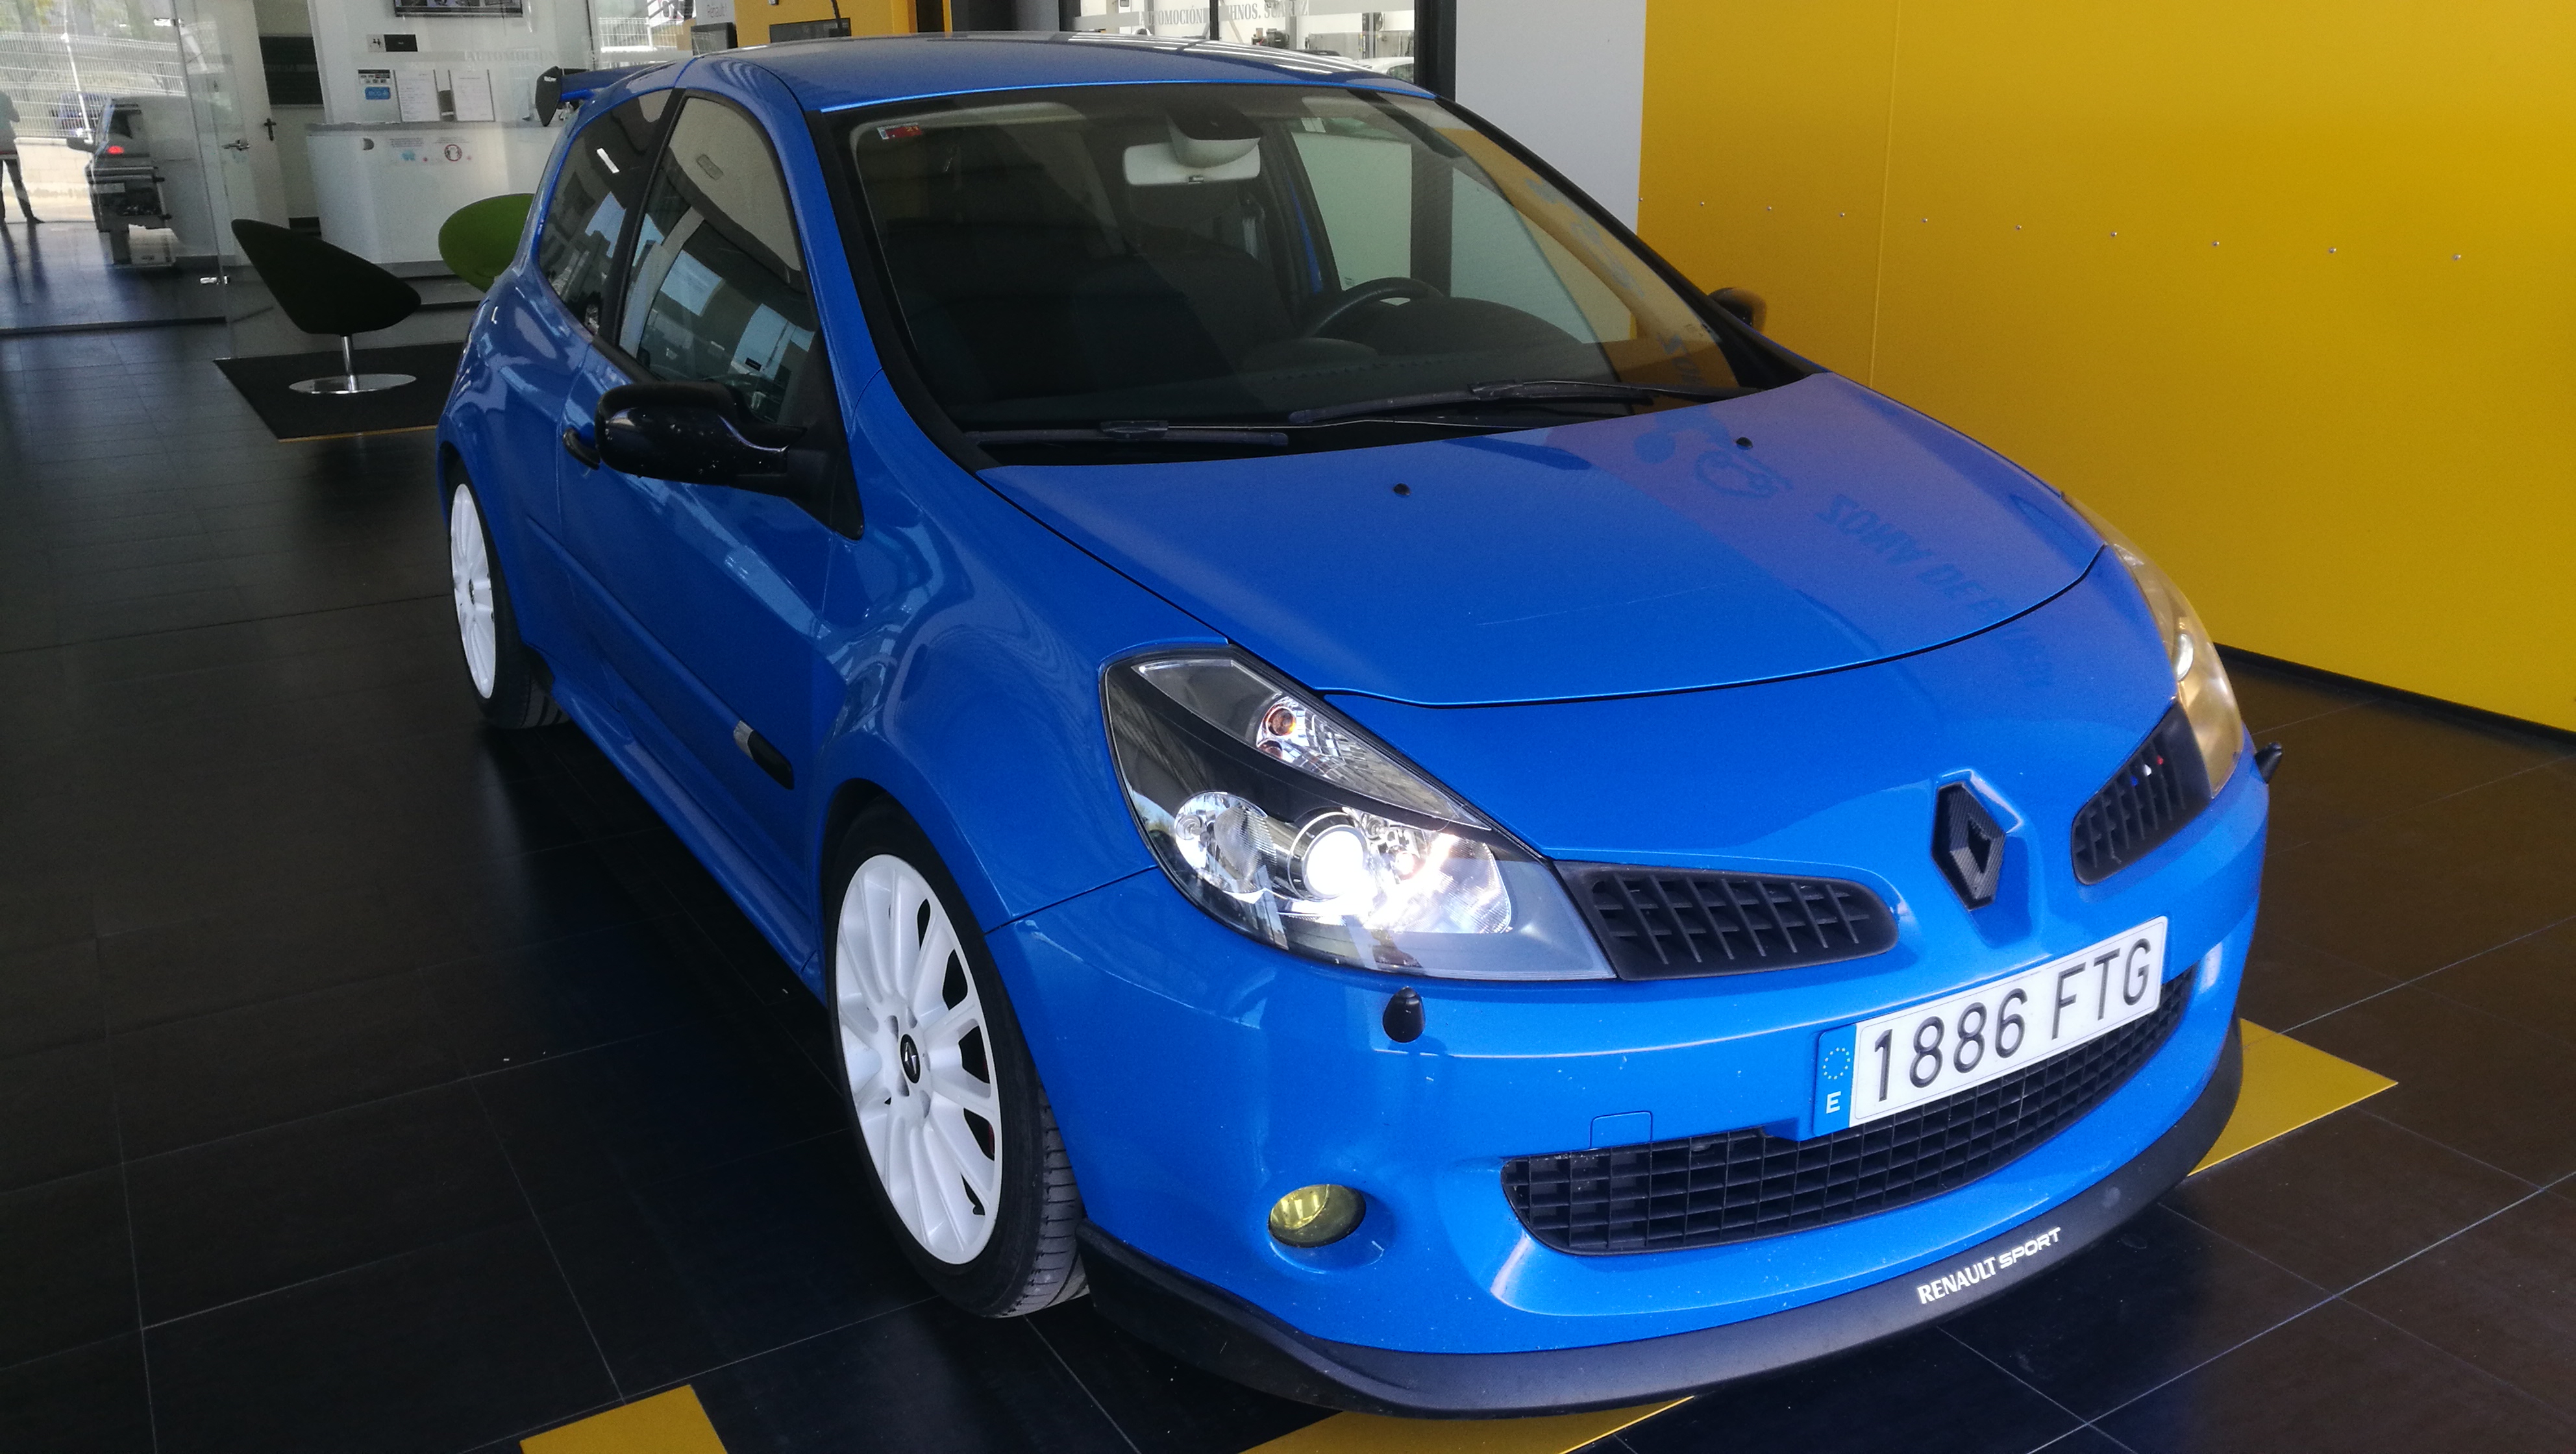 Renault Clio 9990€ - Segunda y ocasión